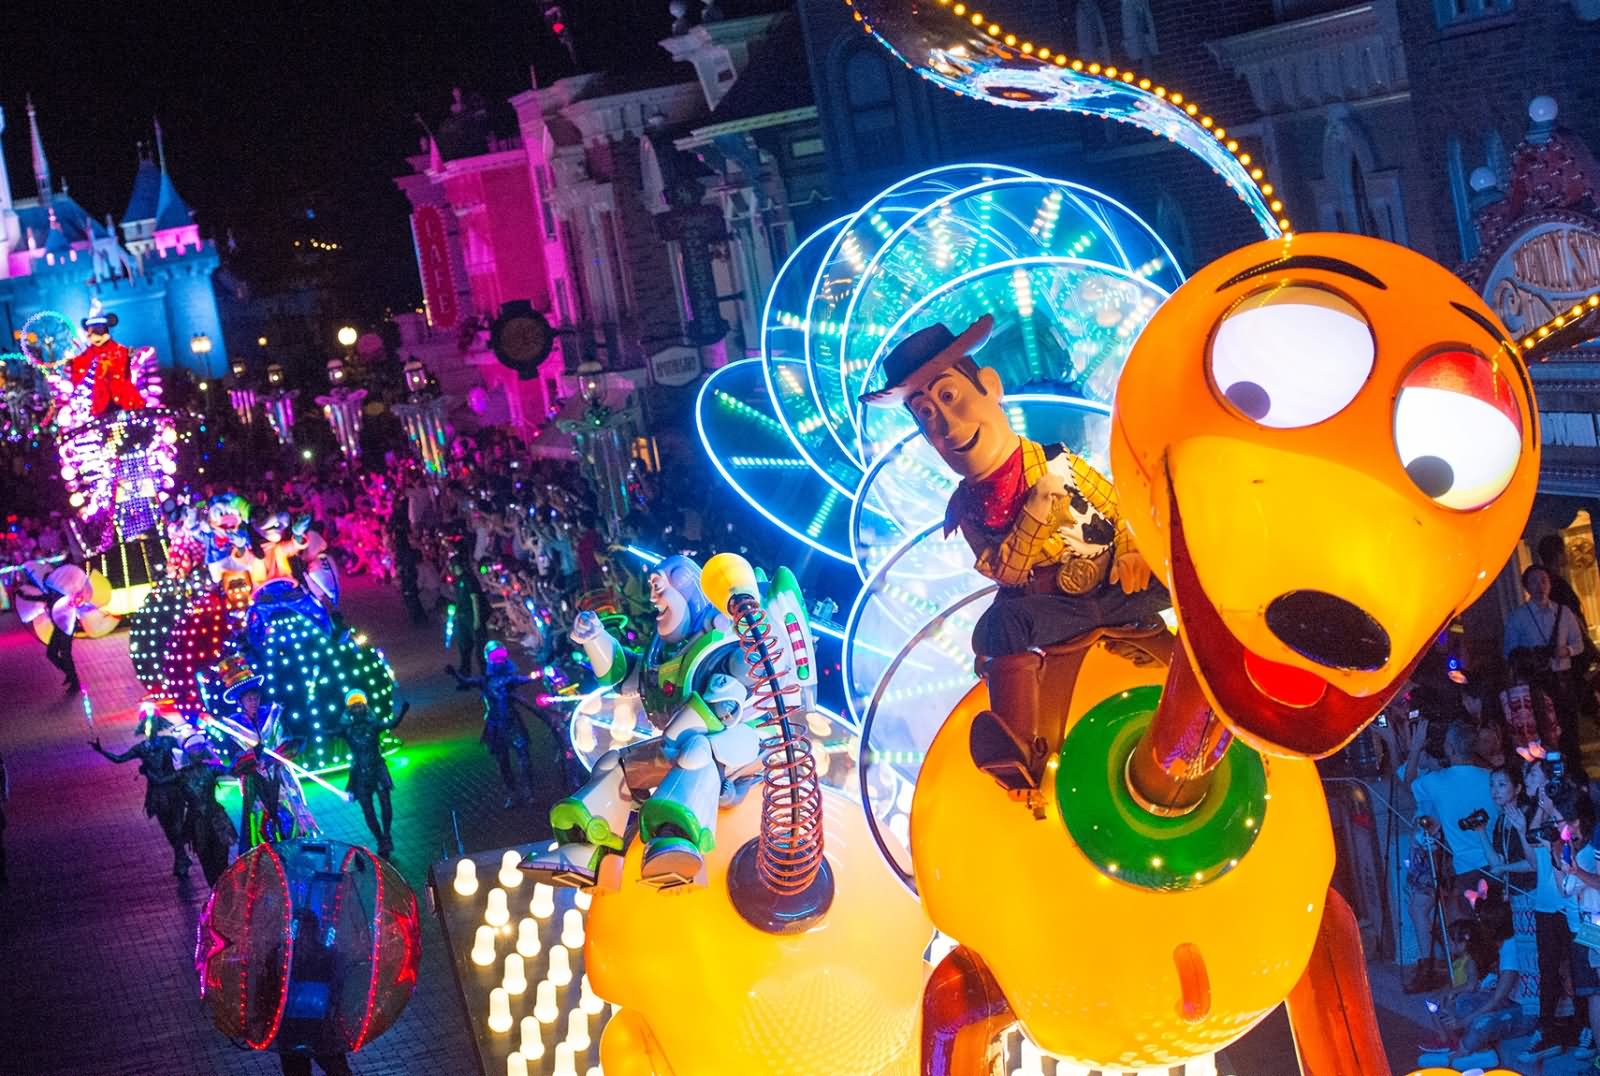 Parade At The Disneyland Hong Kong At Night